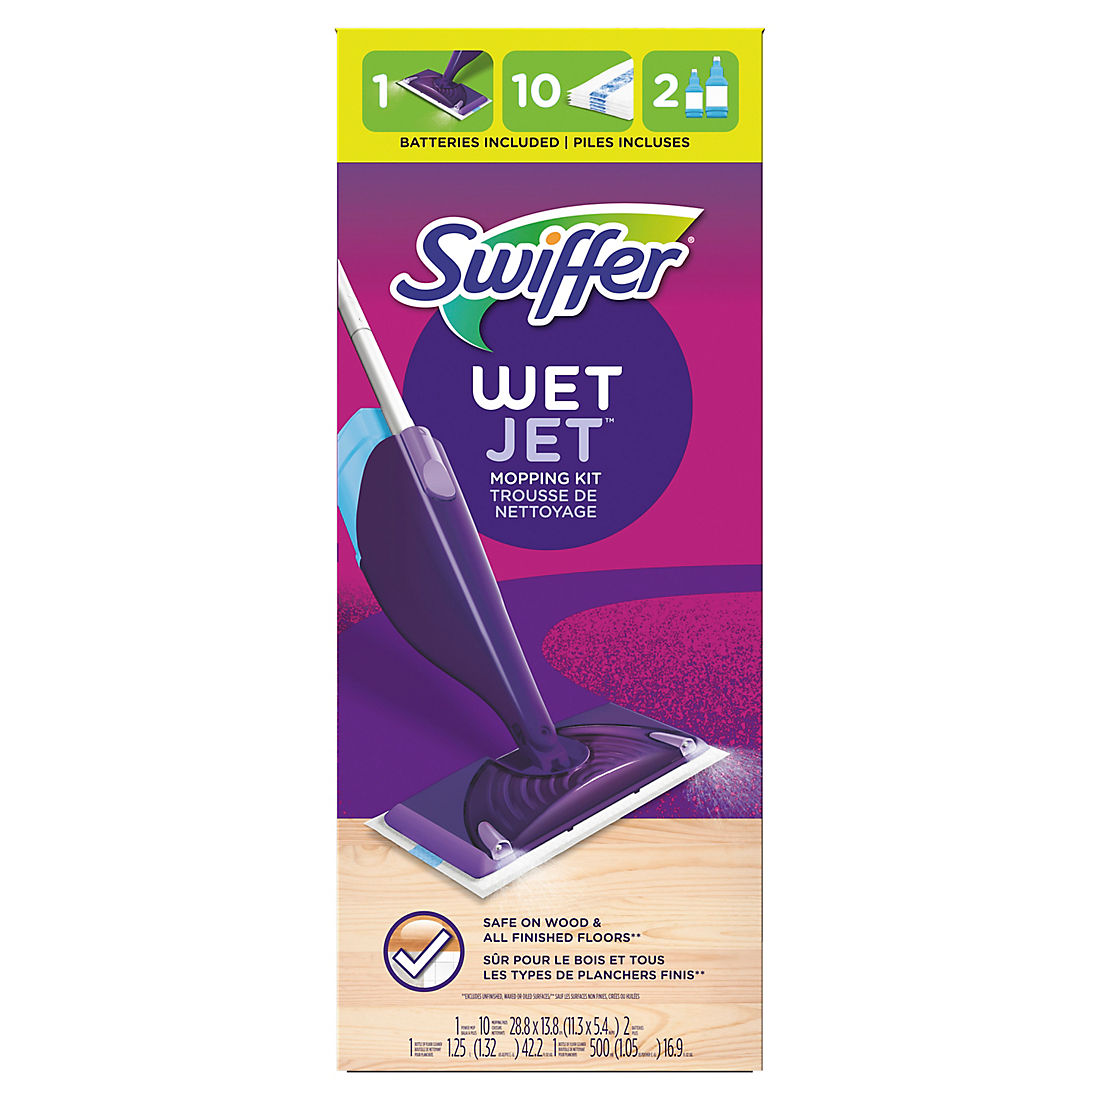 Swiffer Wetjet Hardwood Floor Spray Mop, Is Swiffer Wet Safe For Hardwood Floors